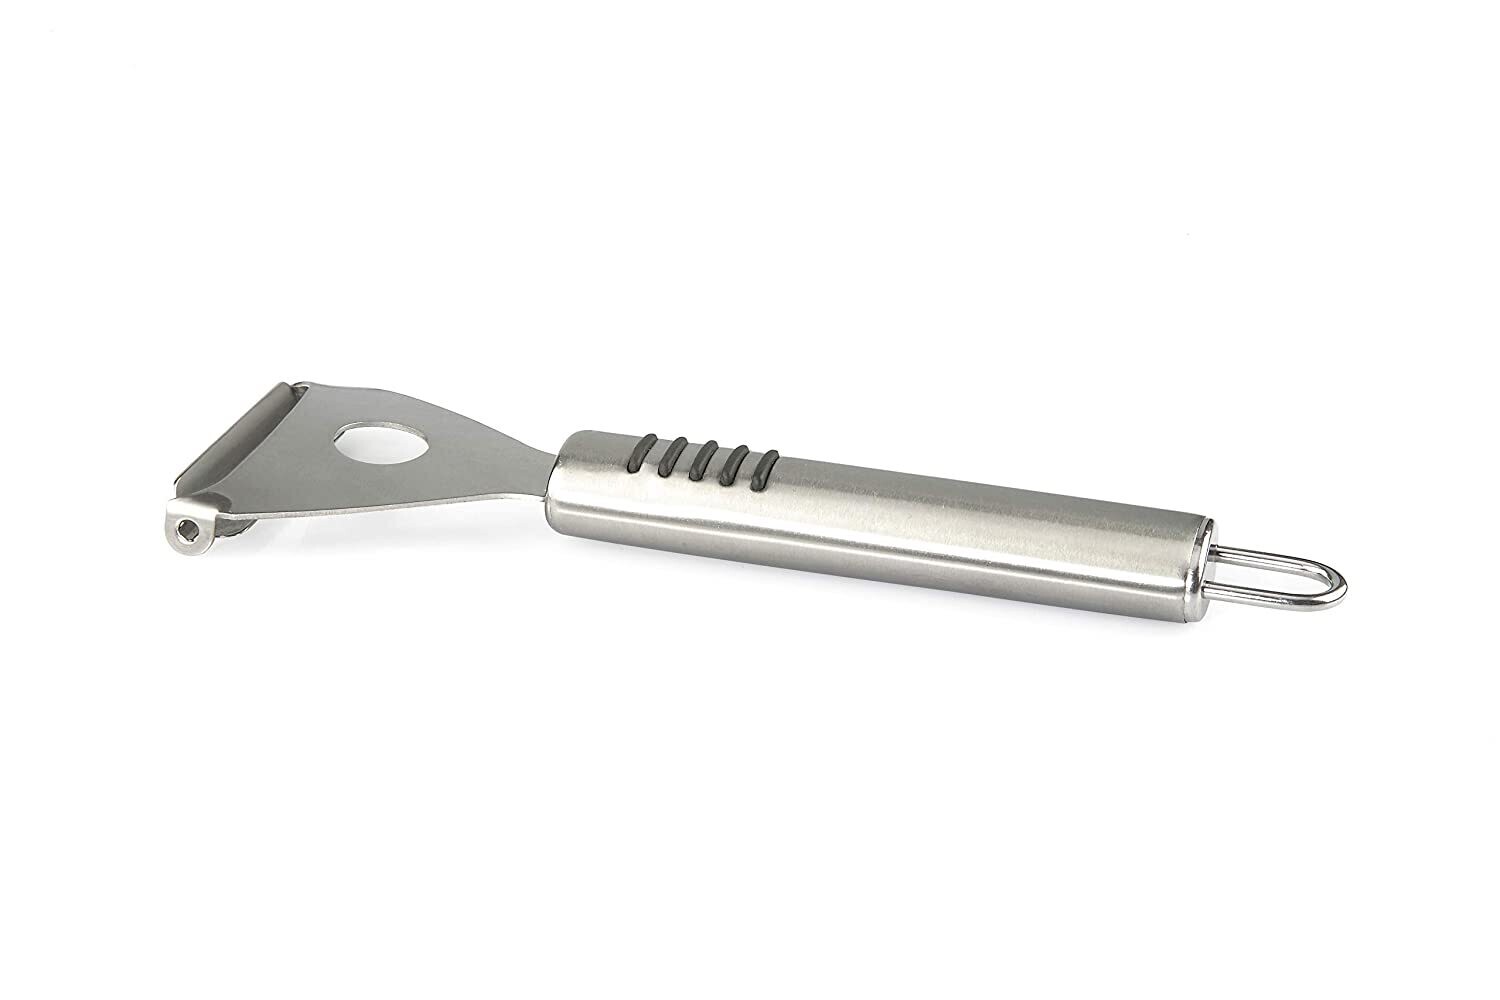 Stainless Steel Peeler multipurpose peeler for carrots, potato #4172